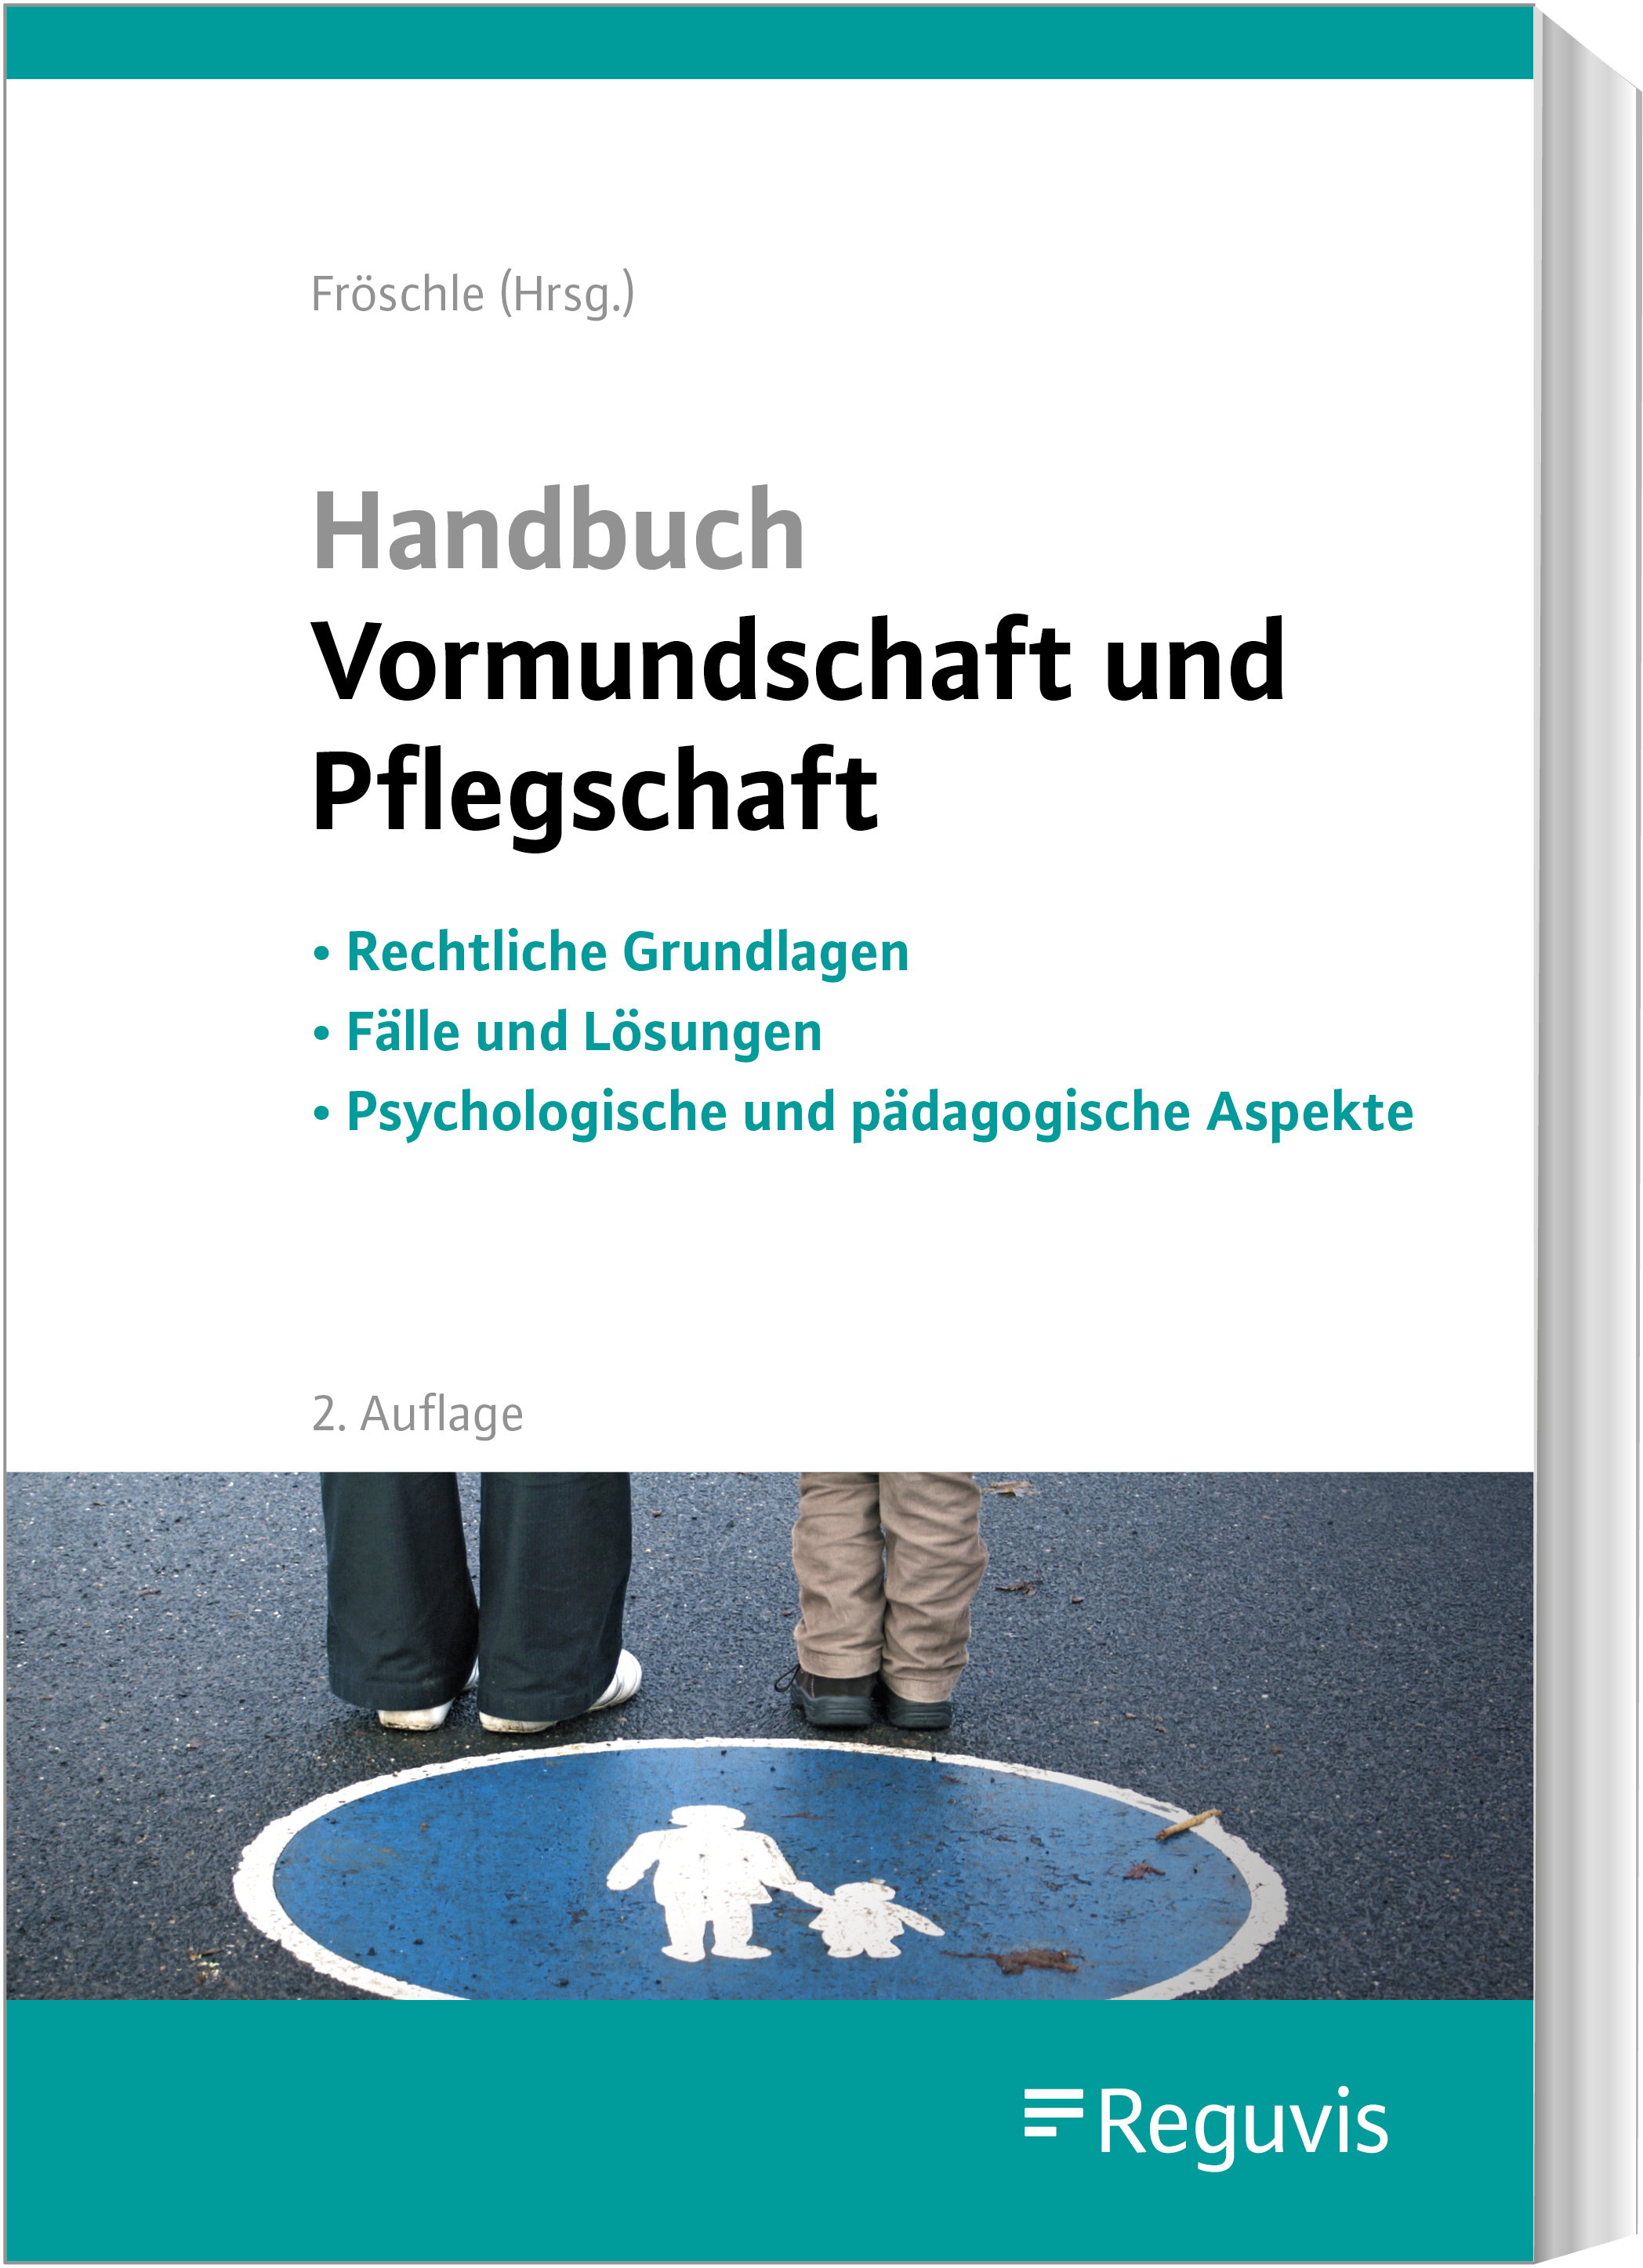 Handbuch Vormundschaft und Pflegschaft (2. Auflage)